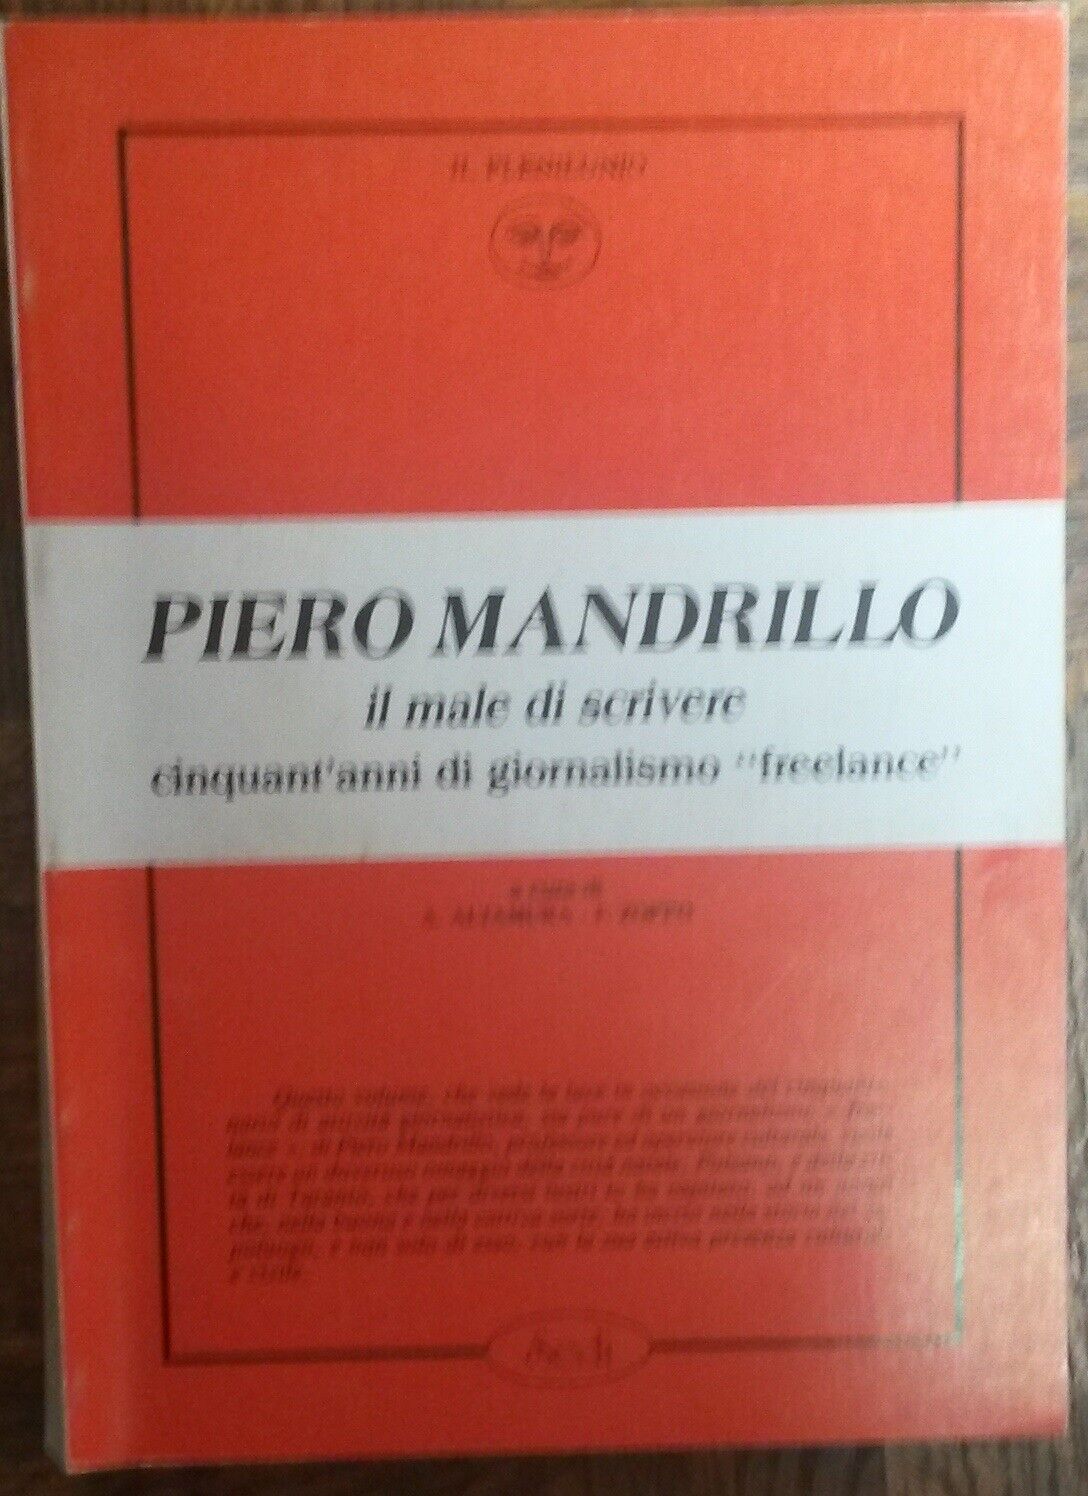 Il male di scrivere - Piero Mandrillo - Il plenilunio,1986 - R